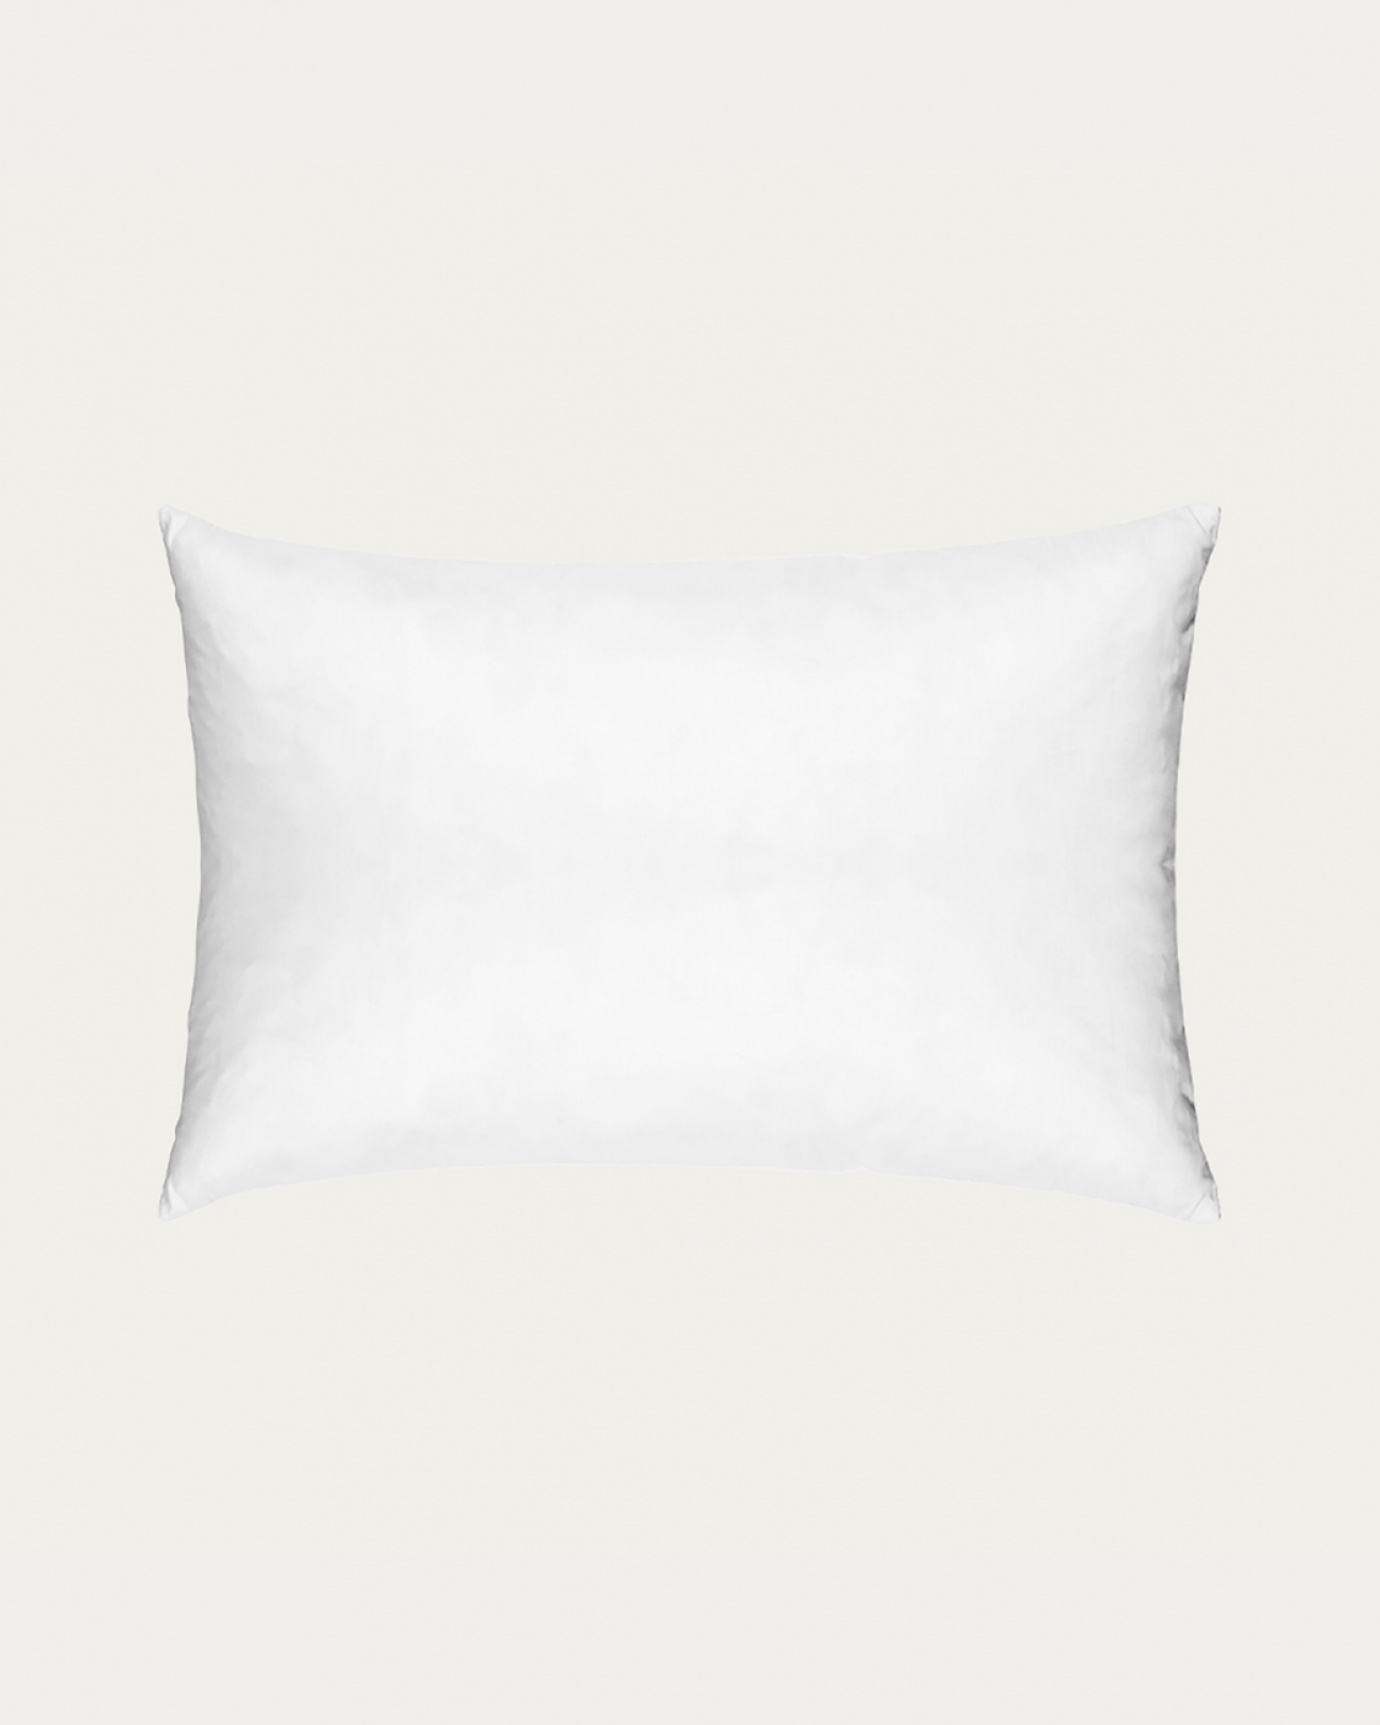 Immagine prodotto bianco SYNTHETIC cuscini interni in cotone con imbottitura in poliestere di LINUM DESIGN. Dimensioni 35x50 cm.